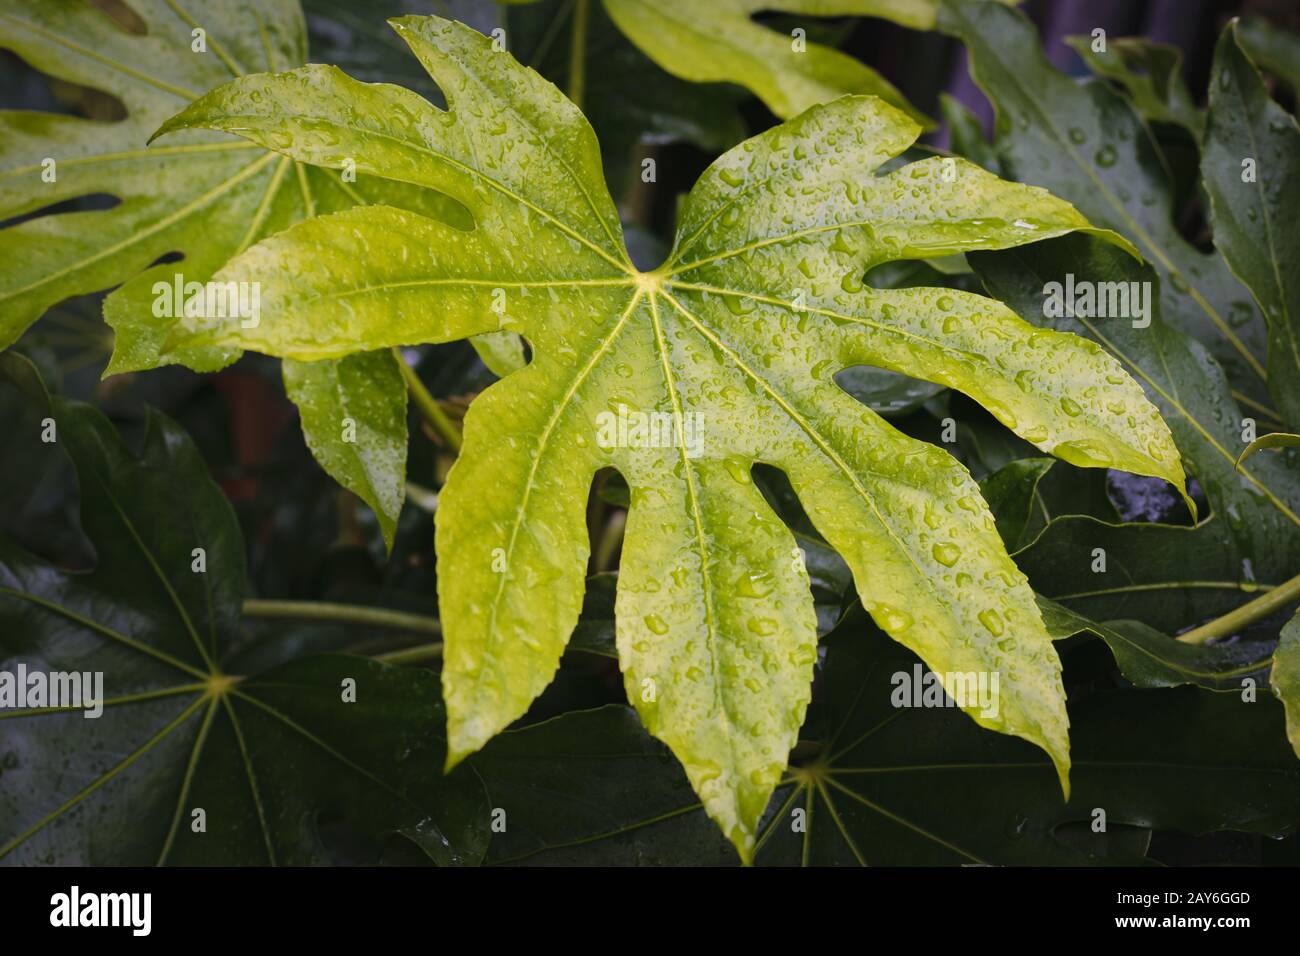 aralia giapponese (Fatsia japonica) foglie con gocce d'acqua Foto Stock